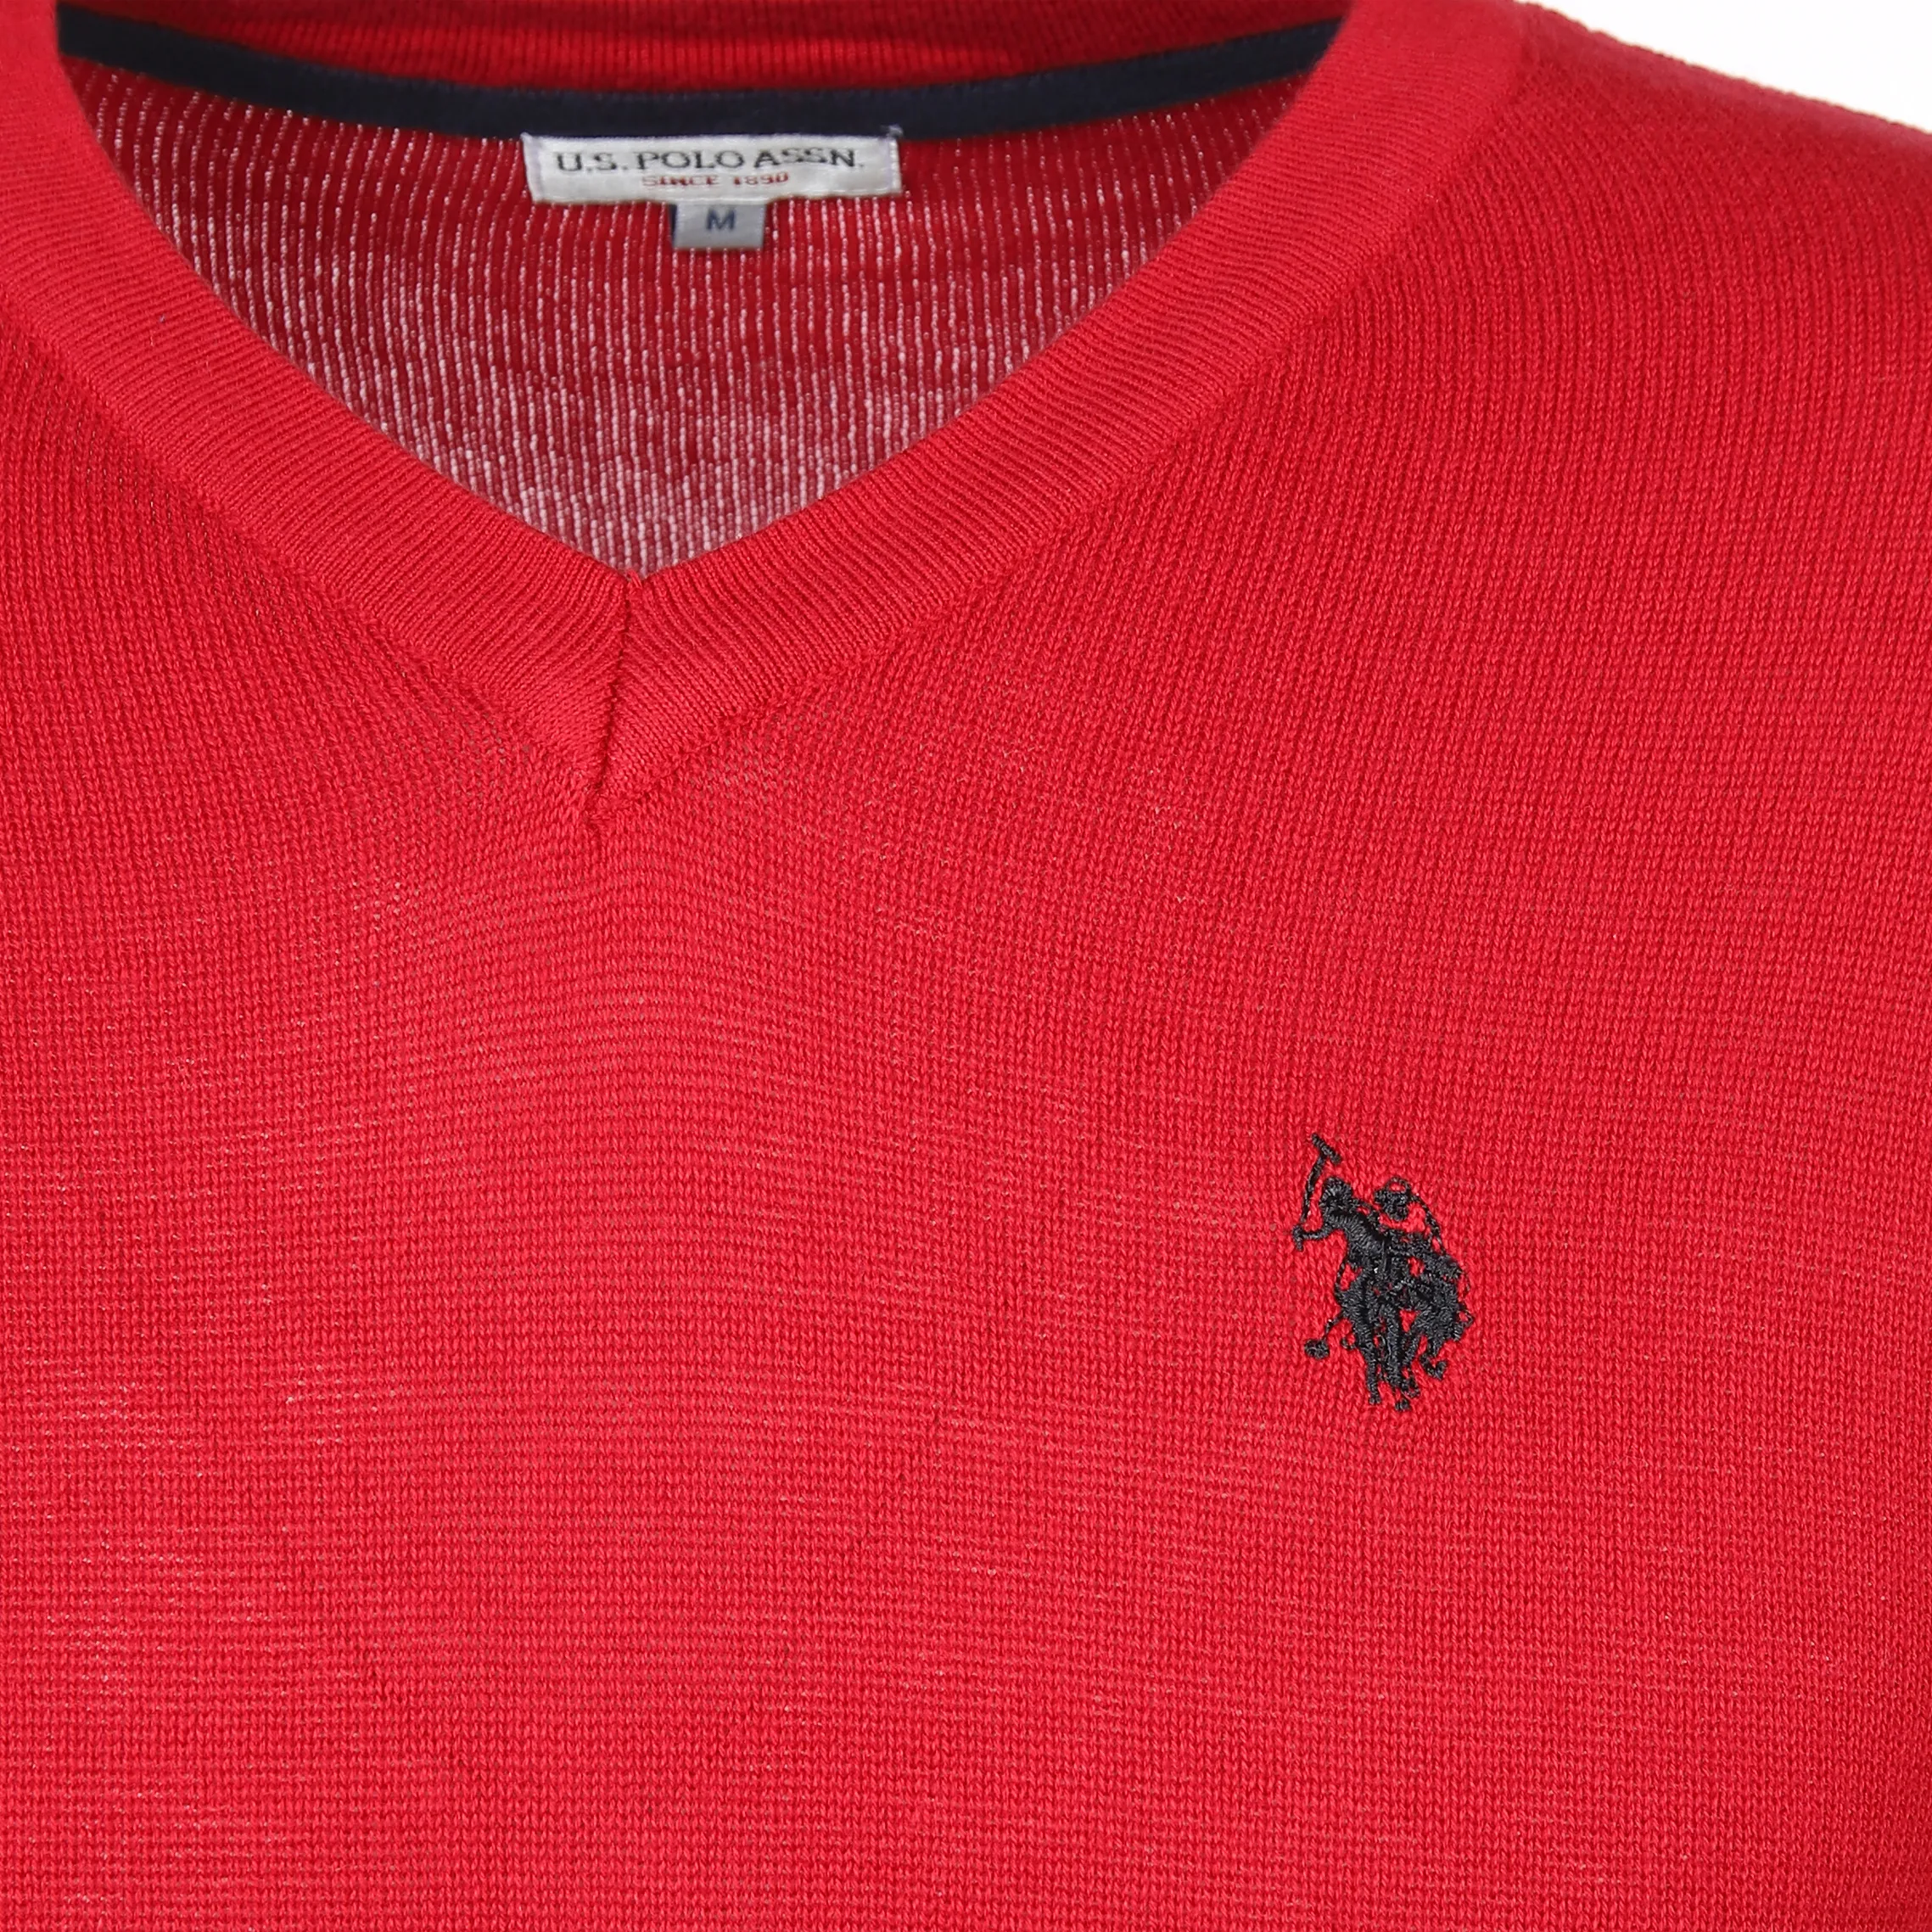 U.S. Polo Assn. He. Pullover V-Ausschnitt Rot 889560 DH´ROT 3